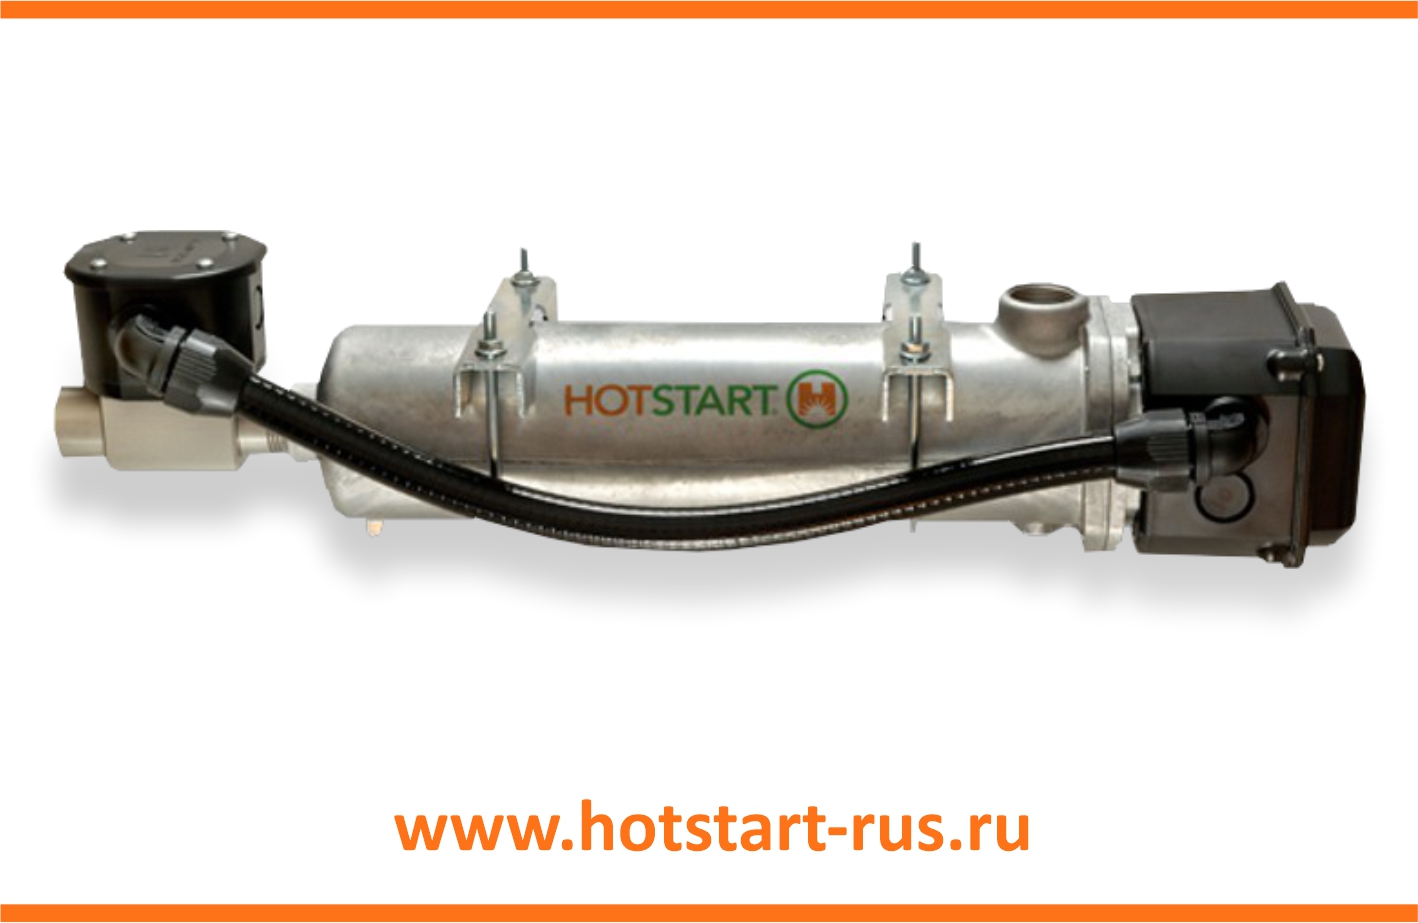 Предпусковой подогреватель двигателя Hotstart 3,0 кВт СL 1302ХХ-200